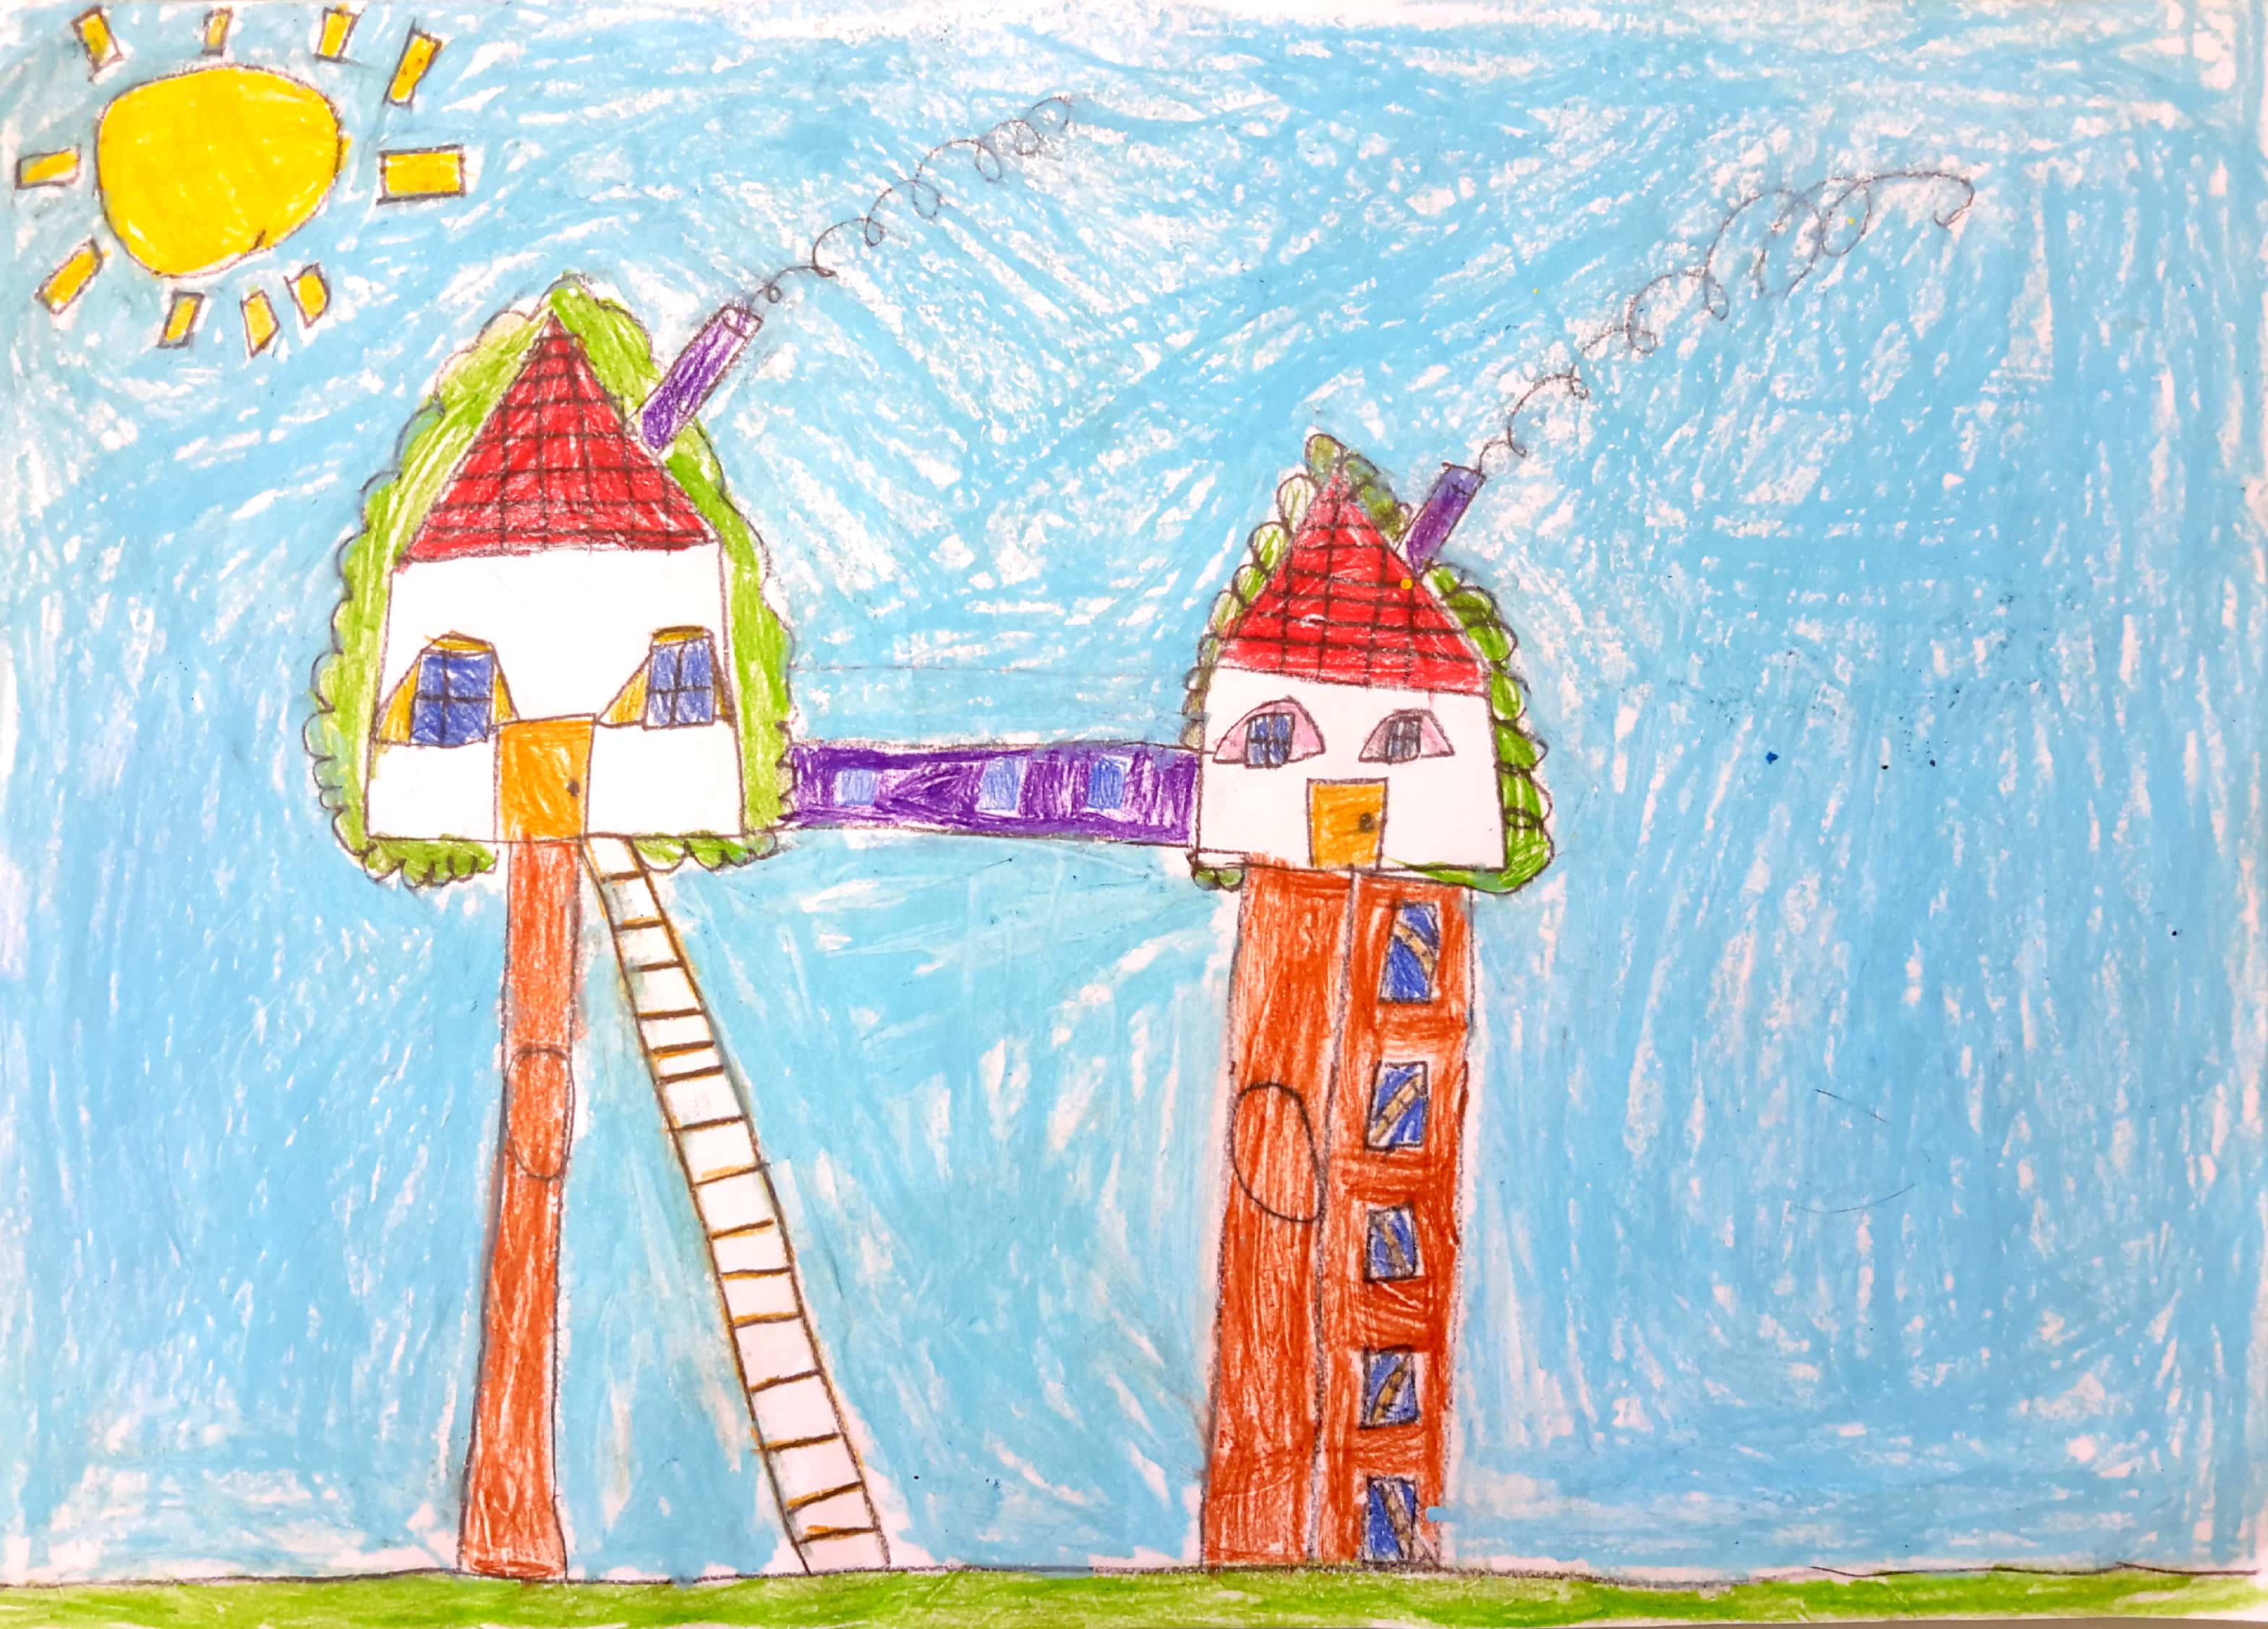 Μαθητής του CGS βραβεύτηκε στον Πανελλήνιο Διαγωνισμό Ζωγραφικής της Παιδικής Πινακοθήκης